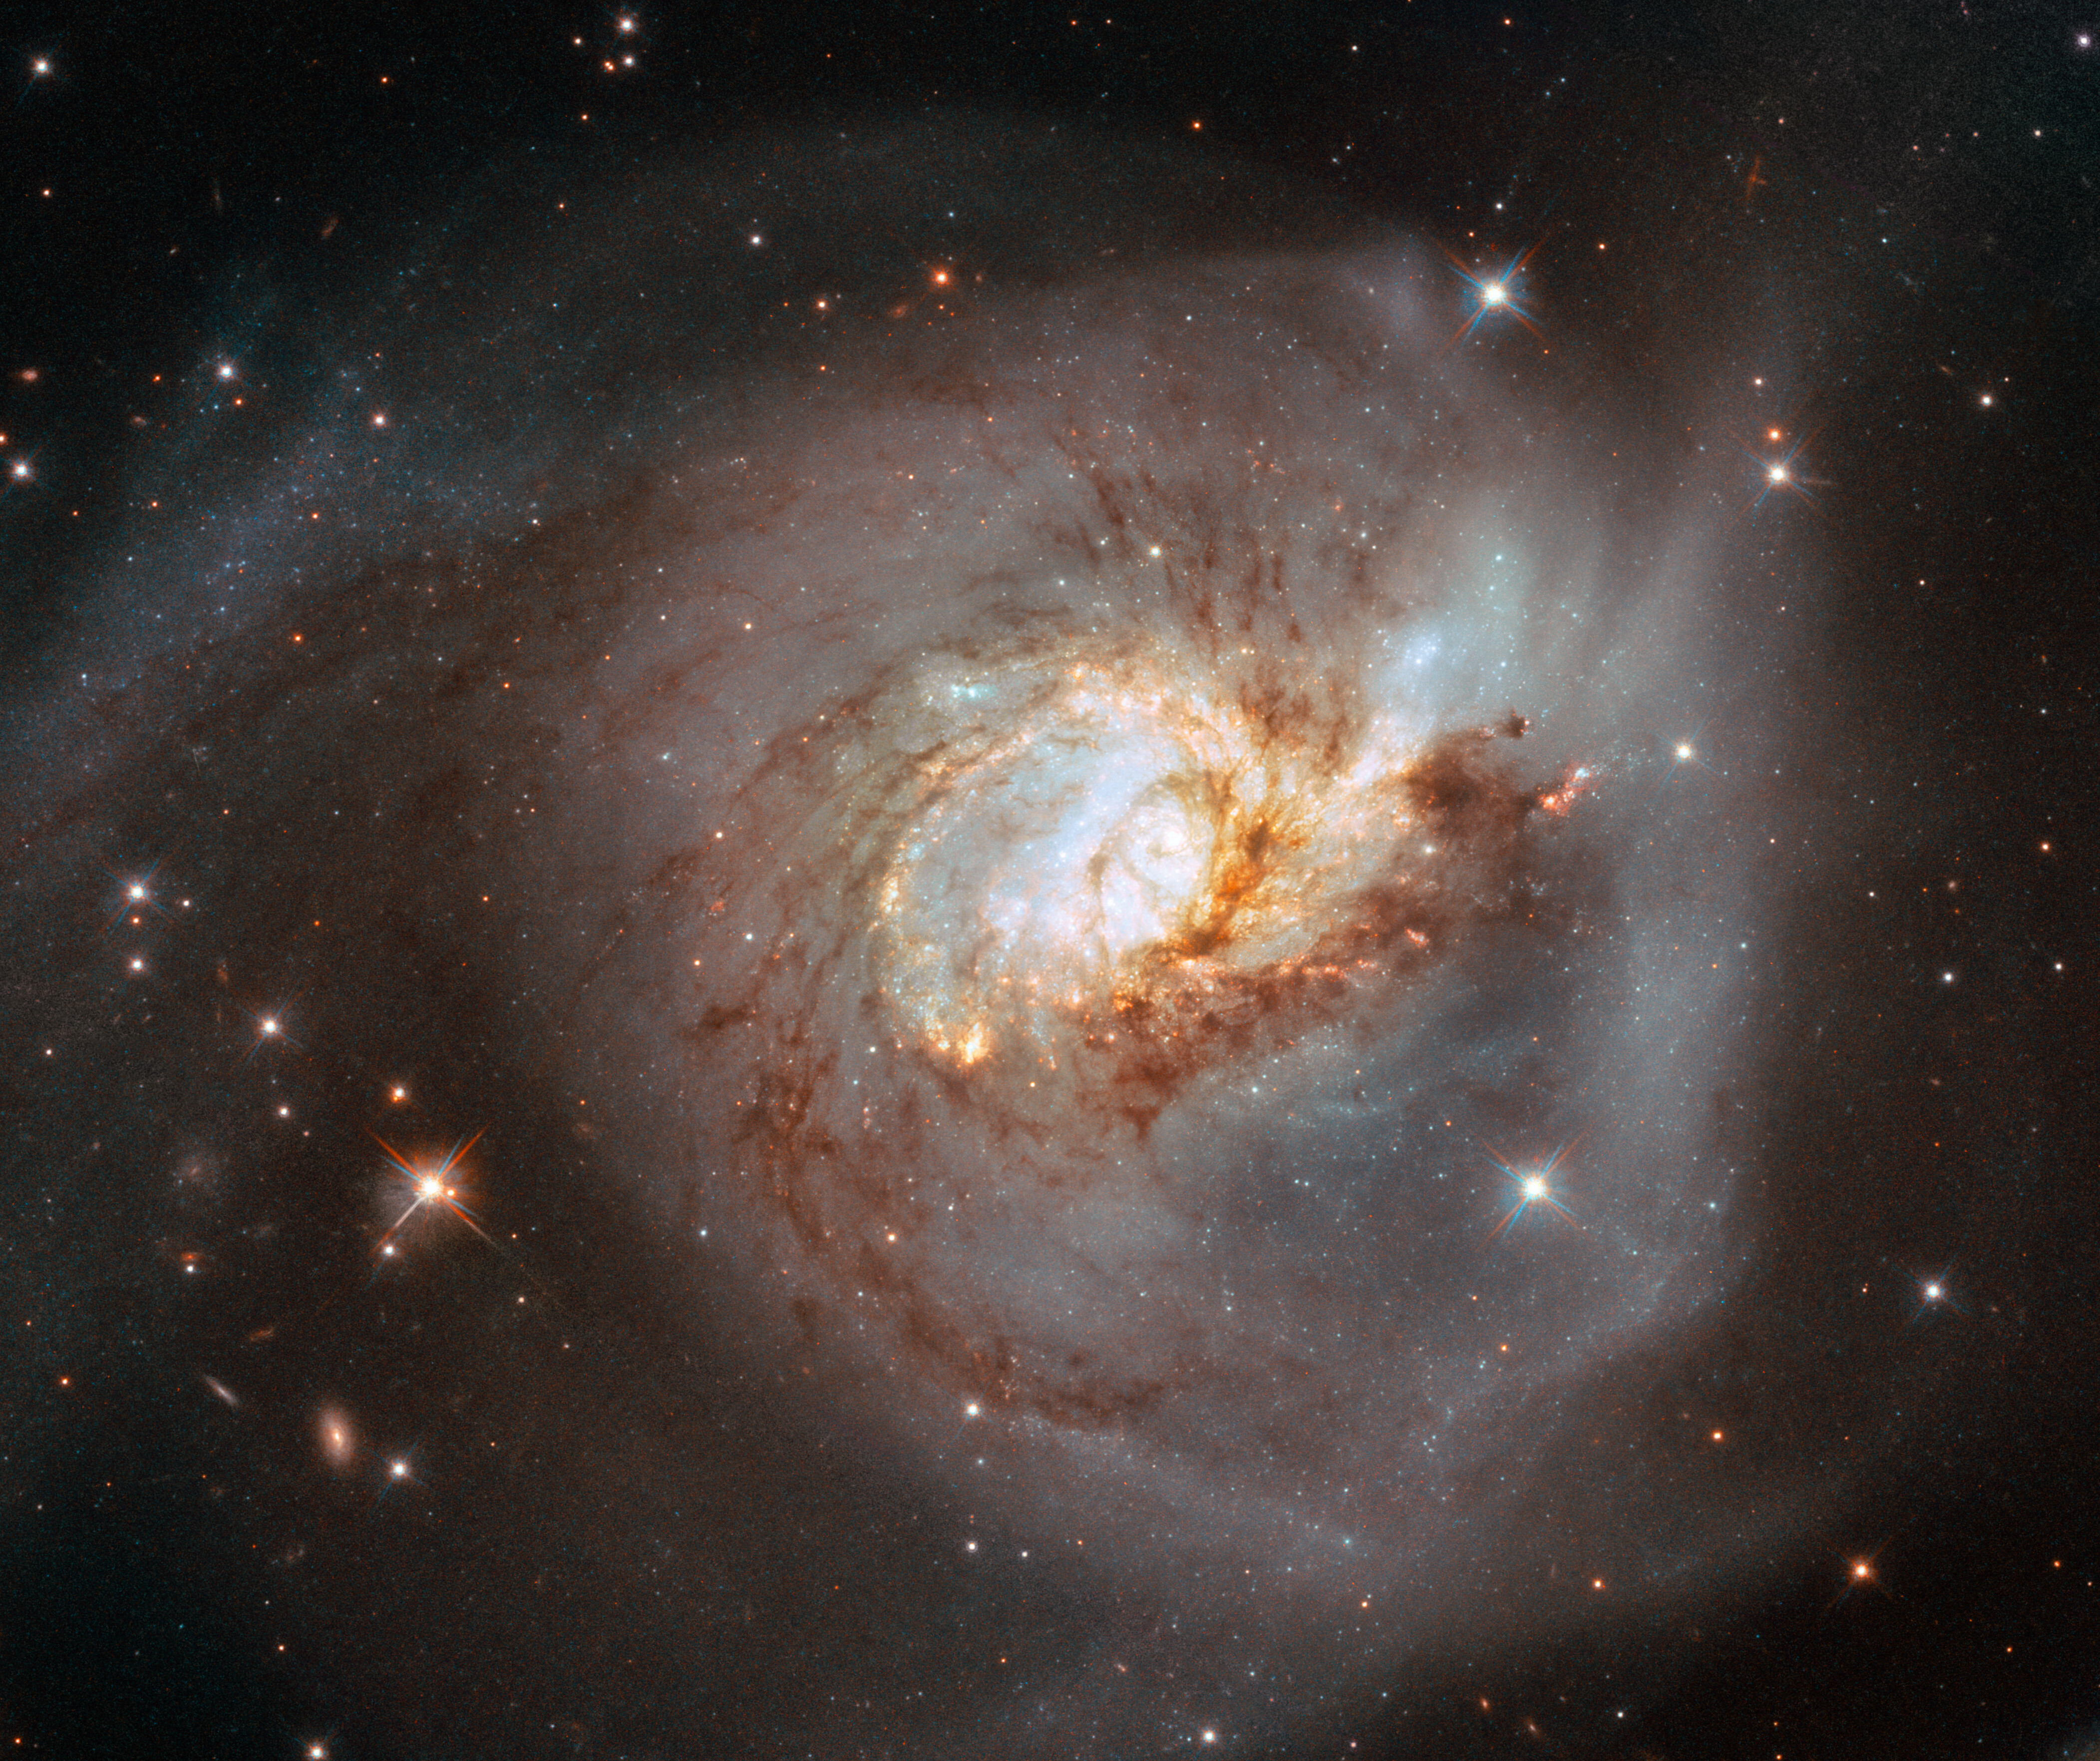 Na ilustracji: Obraz w zakresie optycznym spiralnej galaktyki NGC 3256 widzianej z boku. Został on uzyskany za pomocą Teleskopu Hubble’a. Widać szczegółowo ciemne włókna składające się z pyłu i gazu molekularnego, które wirują wokół centrów obu połączonych galaktyk. Gorące, masywne gwiazdy w obu jądrach galaktyk świecą jasno z odcieniem niebieskawym – mimo że ogólnie ta galaktyka jest jaśniejsza w podczerwieni. Źródło: ESA/Hubble, NASA